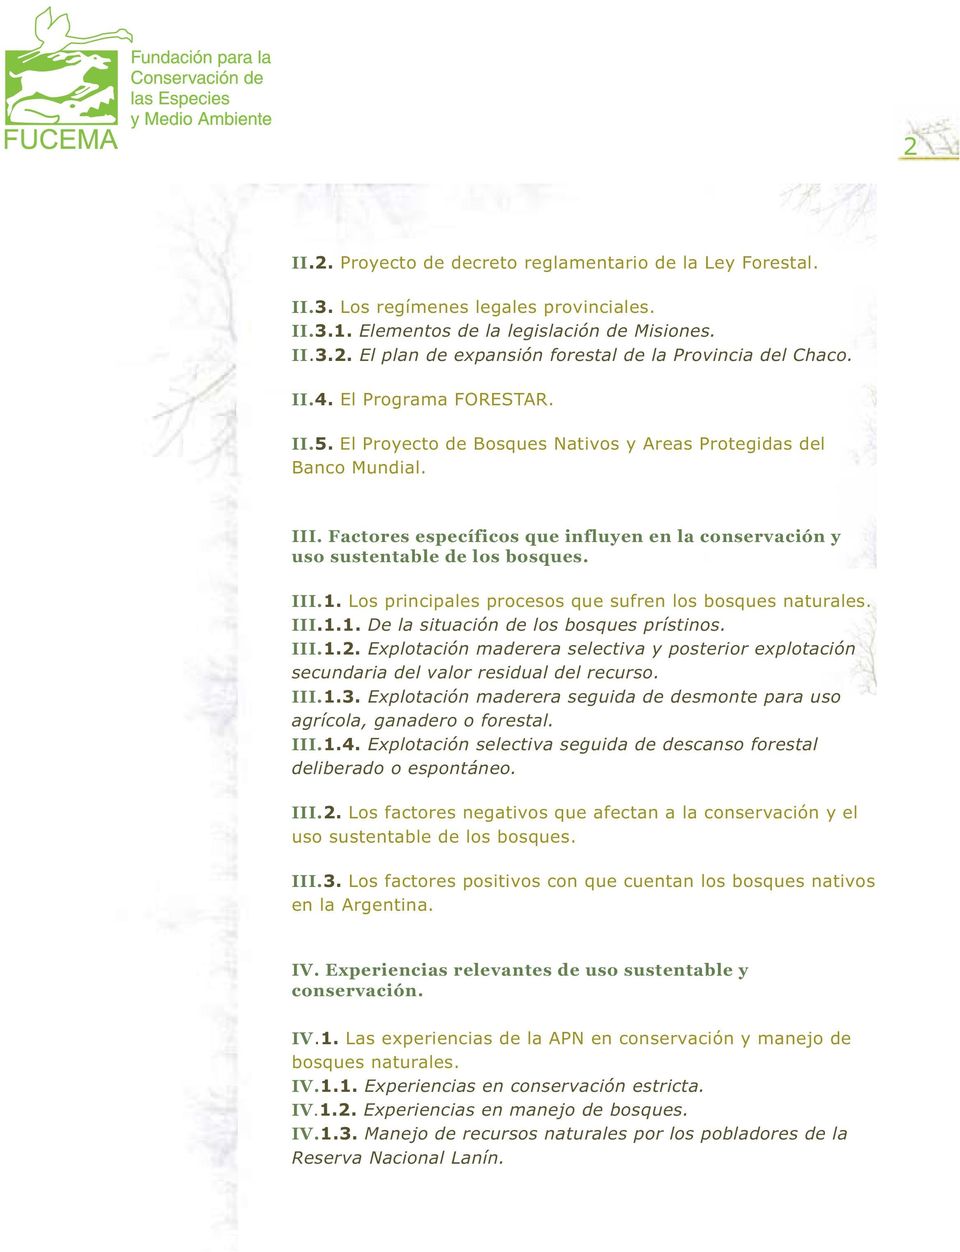 Los principales procesos que sufren los bosques naturales. III.1.1. De la situación de los bosques prístinos. III.1.2.